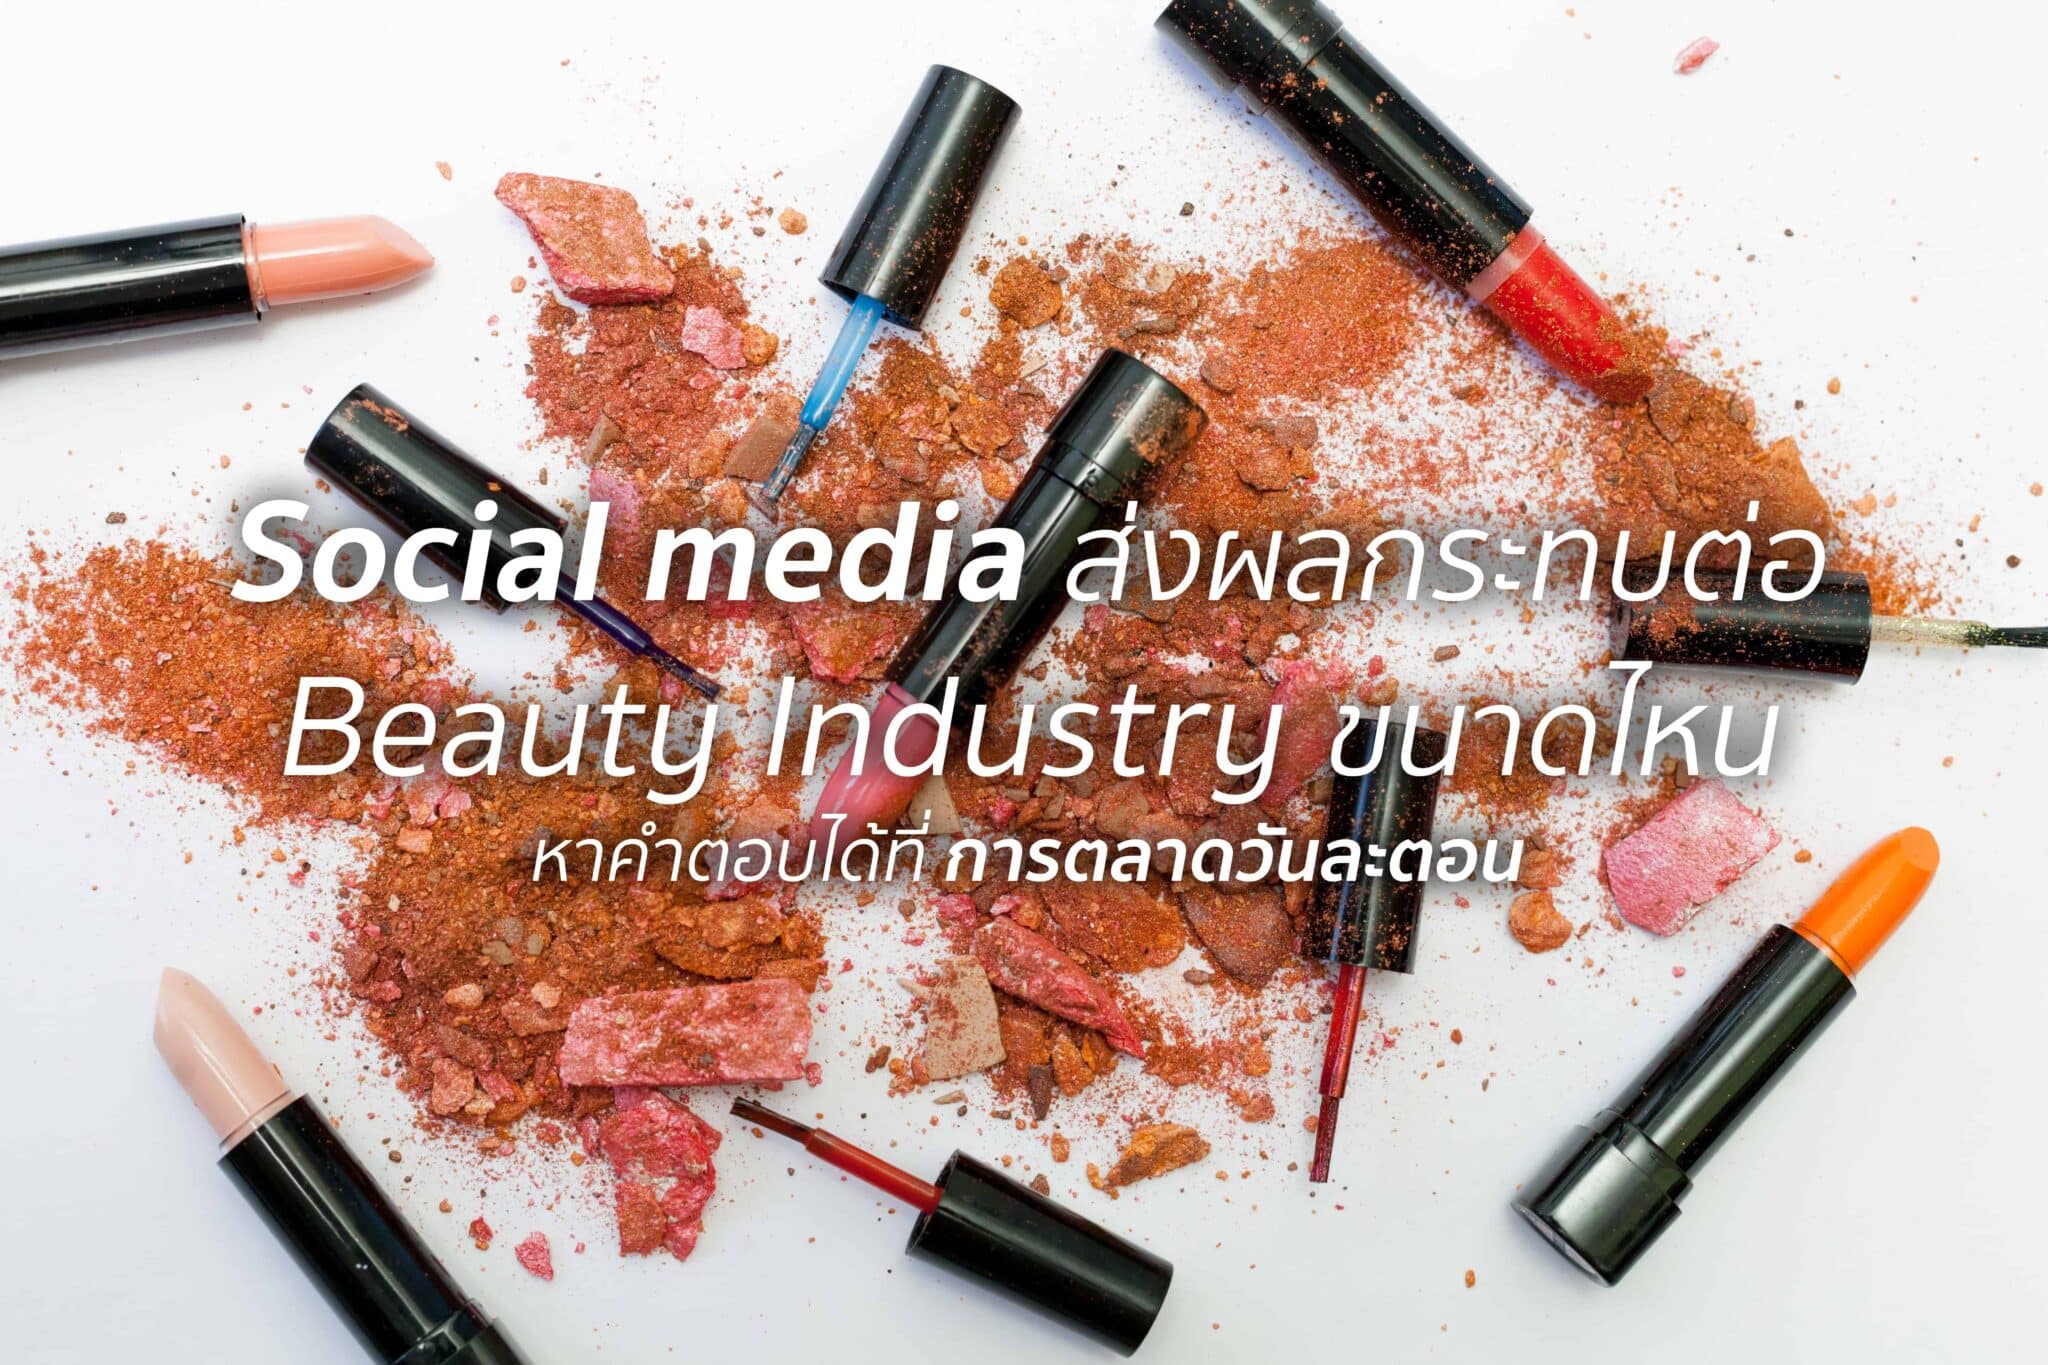 Beauty Industry ในวันนี้ถูก Social Media เปลี่ยนไปอย่างไร